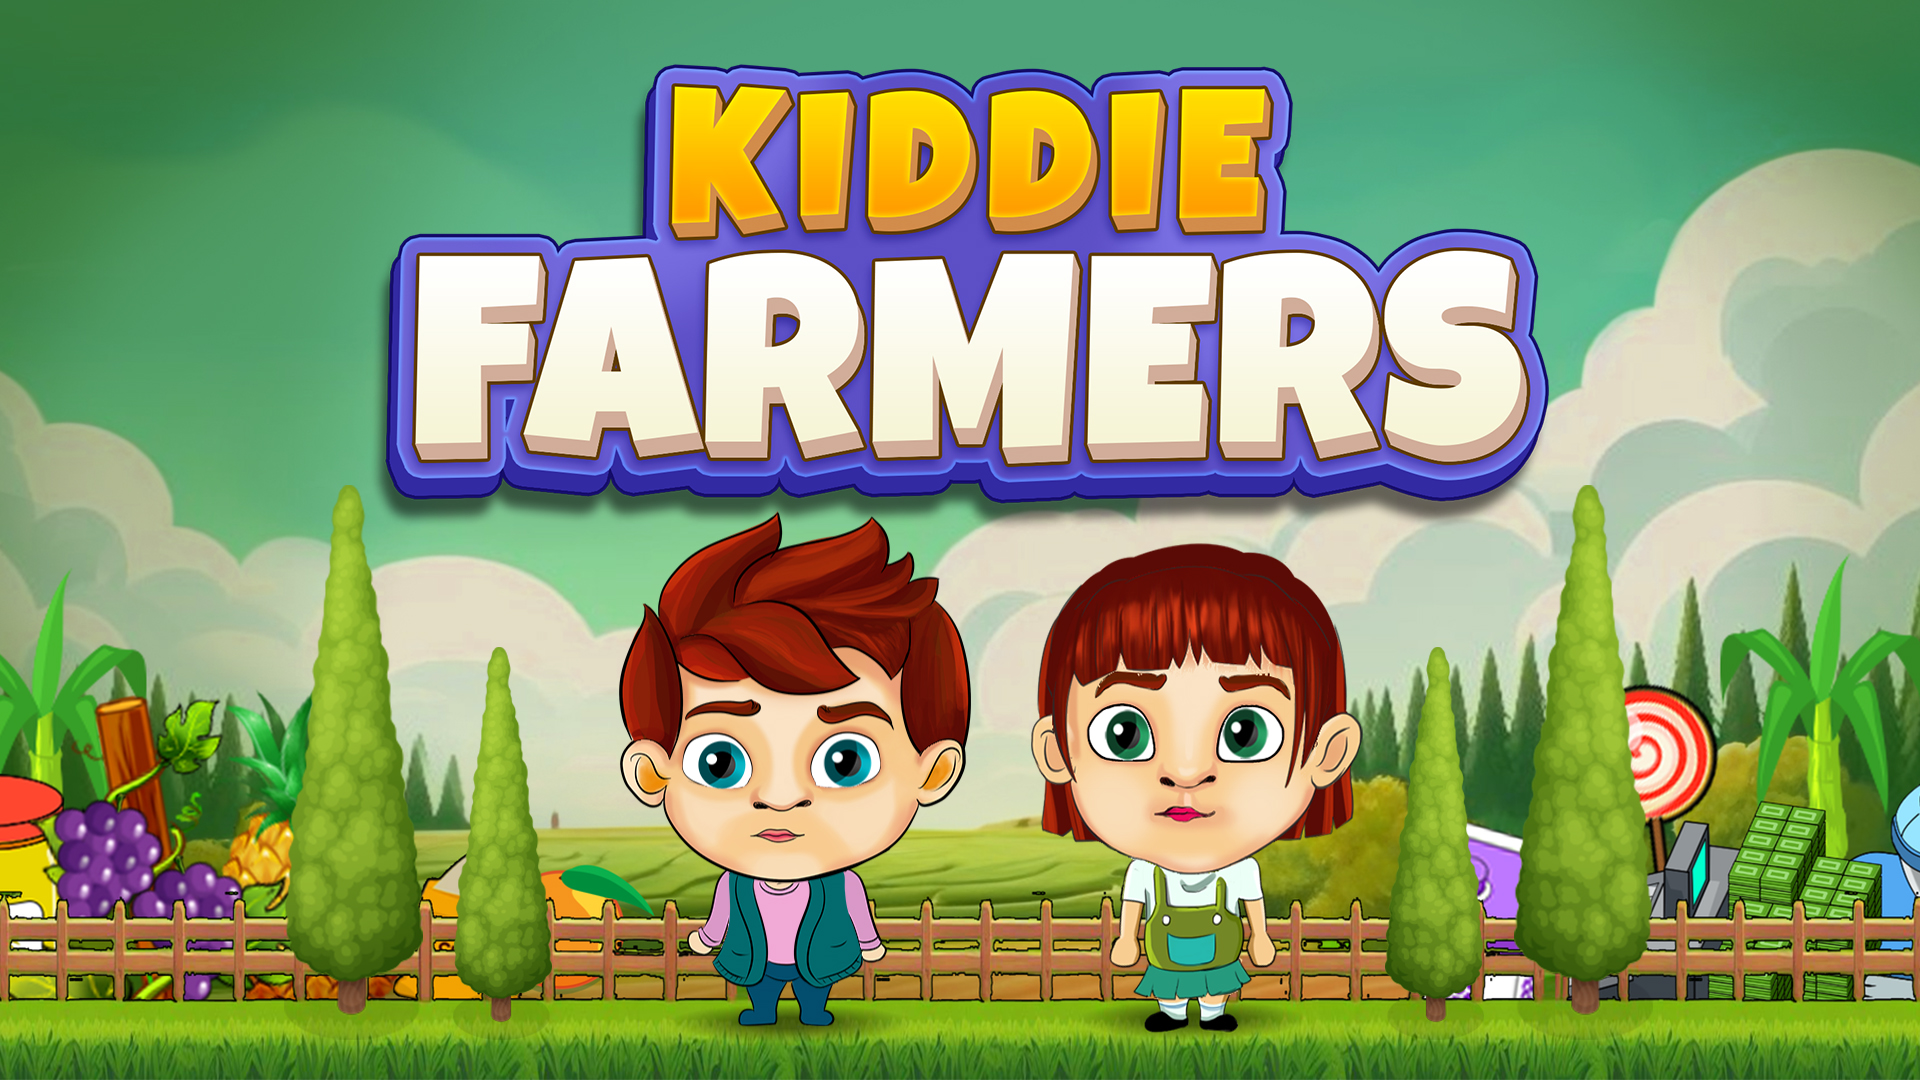 Kiddie Farmers Game Image